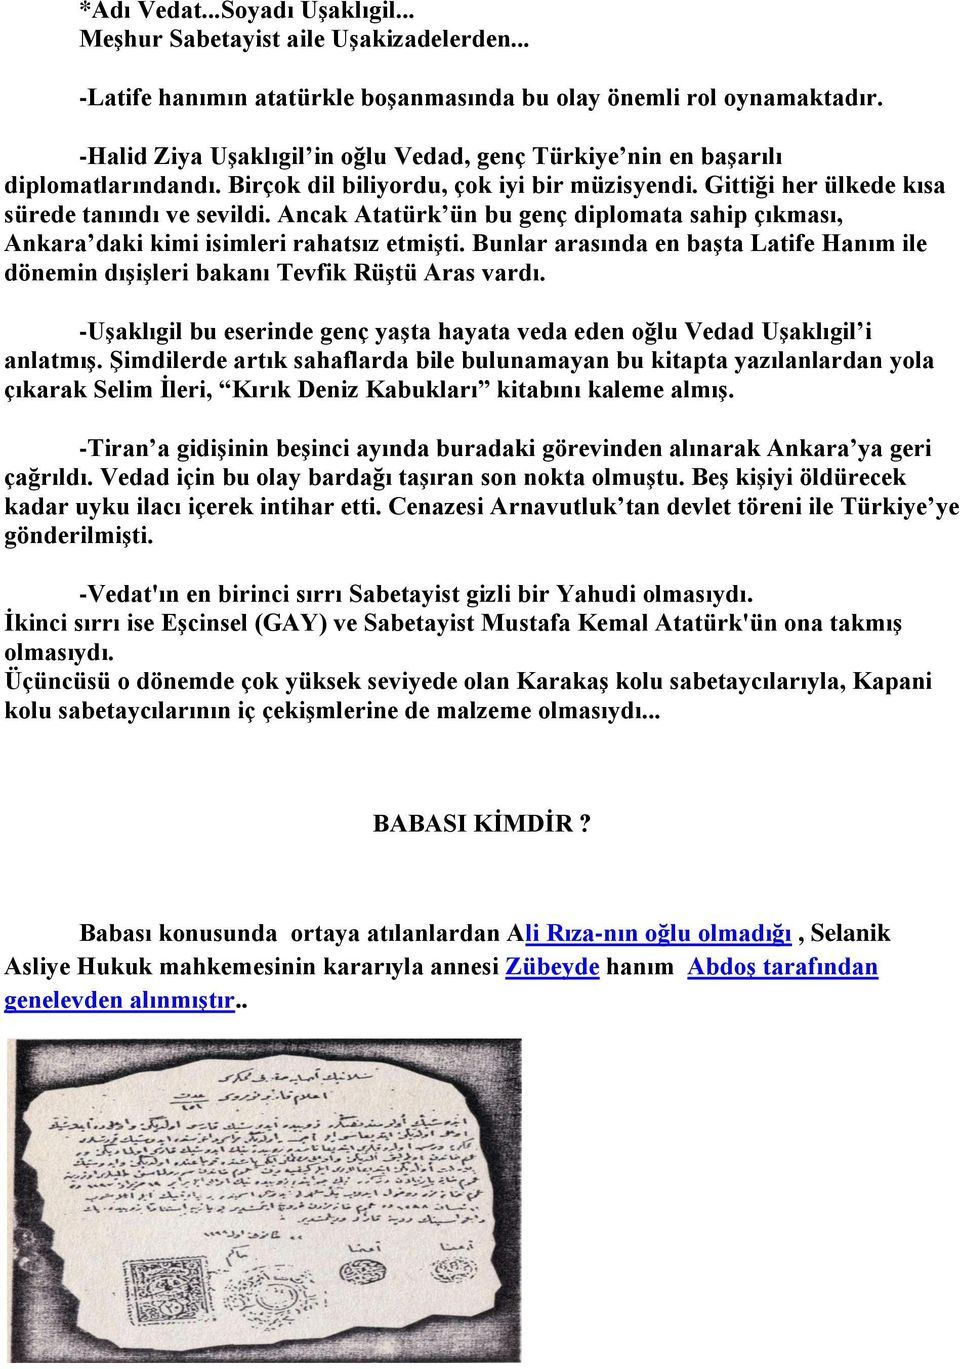 Ancak Atatürk ün bu genç diplomata sahip çıkması, Ankara daki kimi isimleri rahatsız etmişti. Bunlar arasında en başta Latife Hanım ile dönemin dışişleri bakanı Tevfik Rüştü Aras vardı.